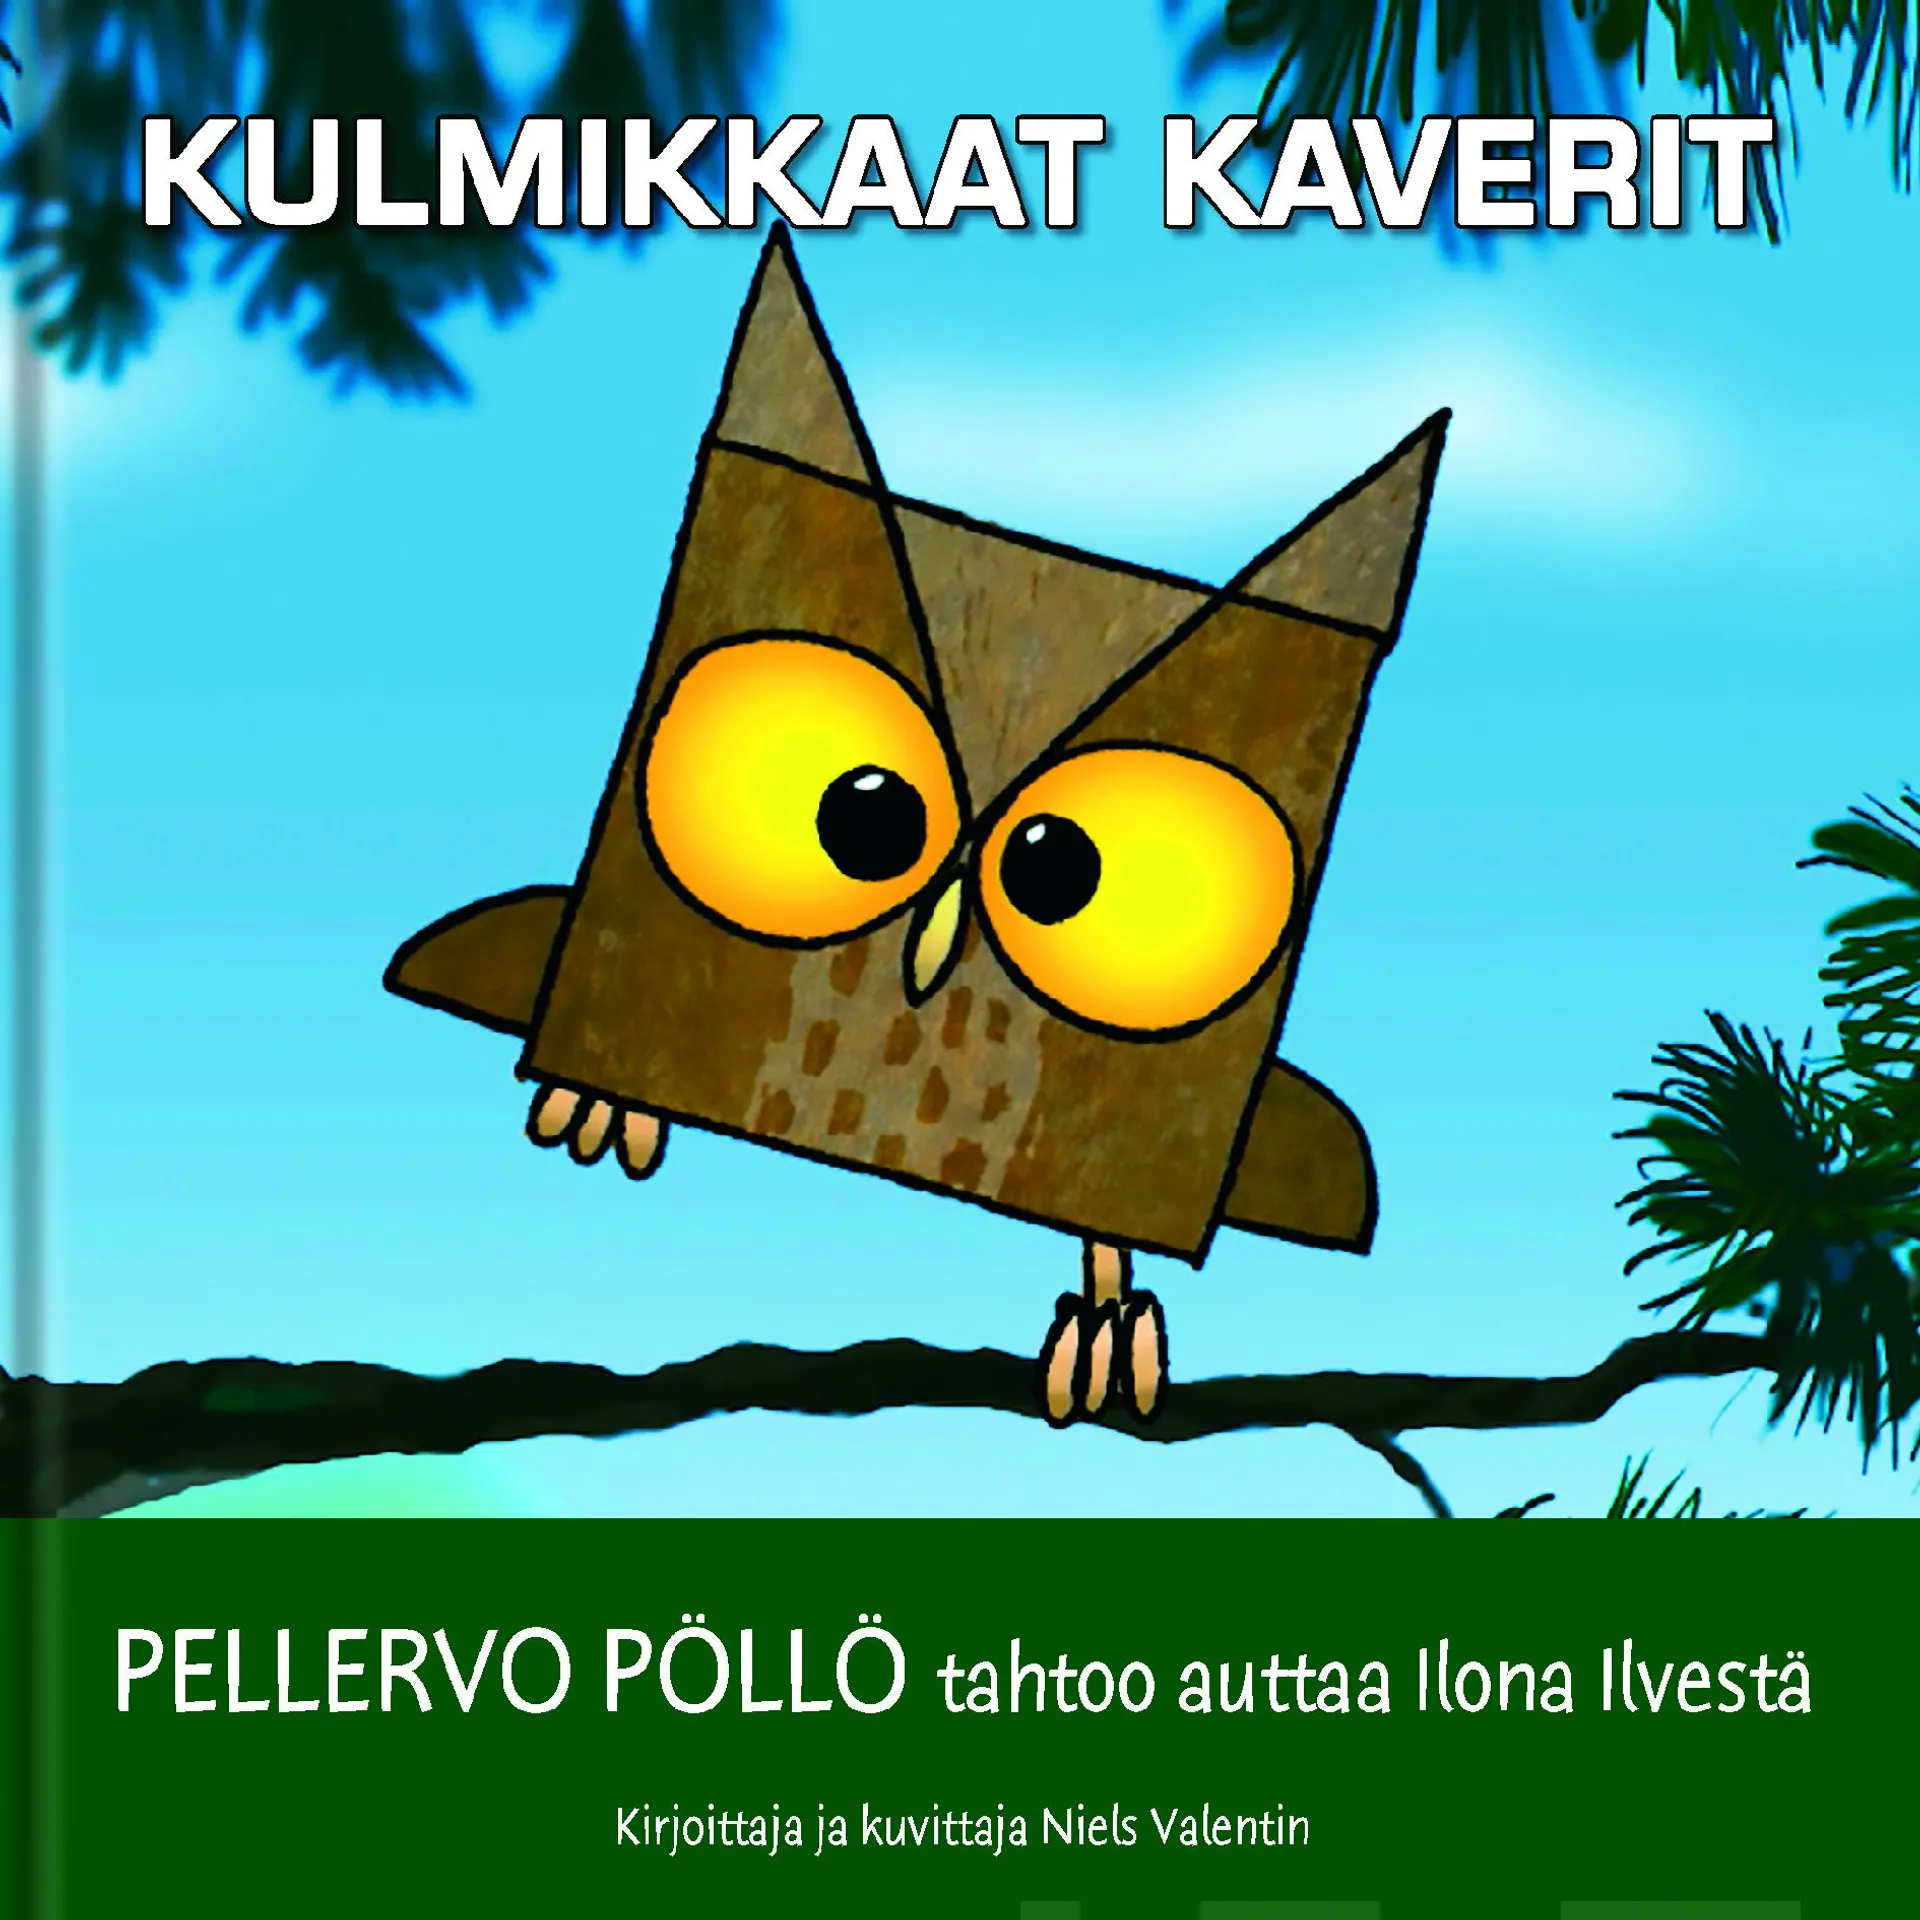 Kulmikkaat Kaverit - Pellervo Pöllö tahtoo auttaa Ilona Ilvestä